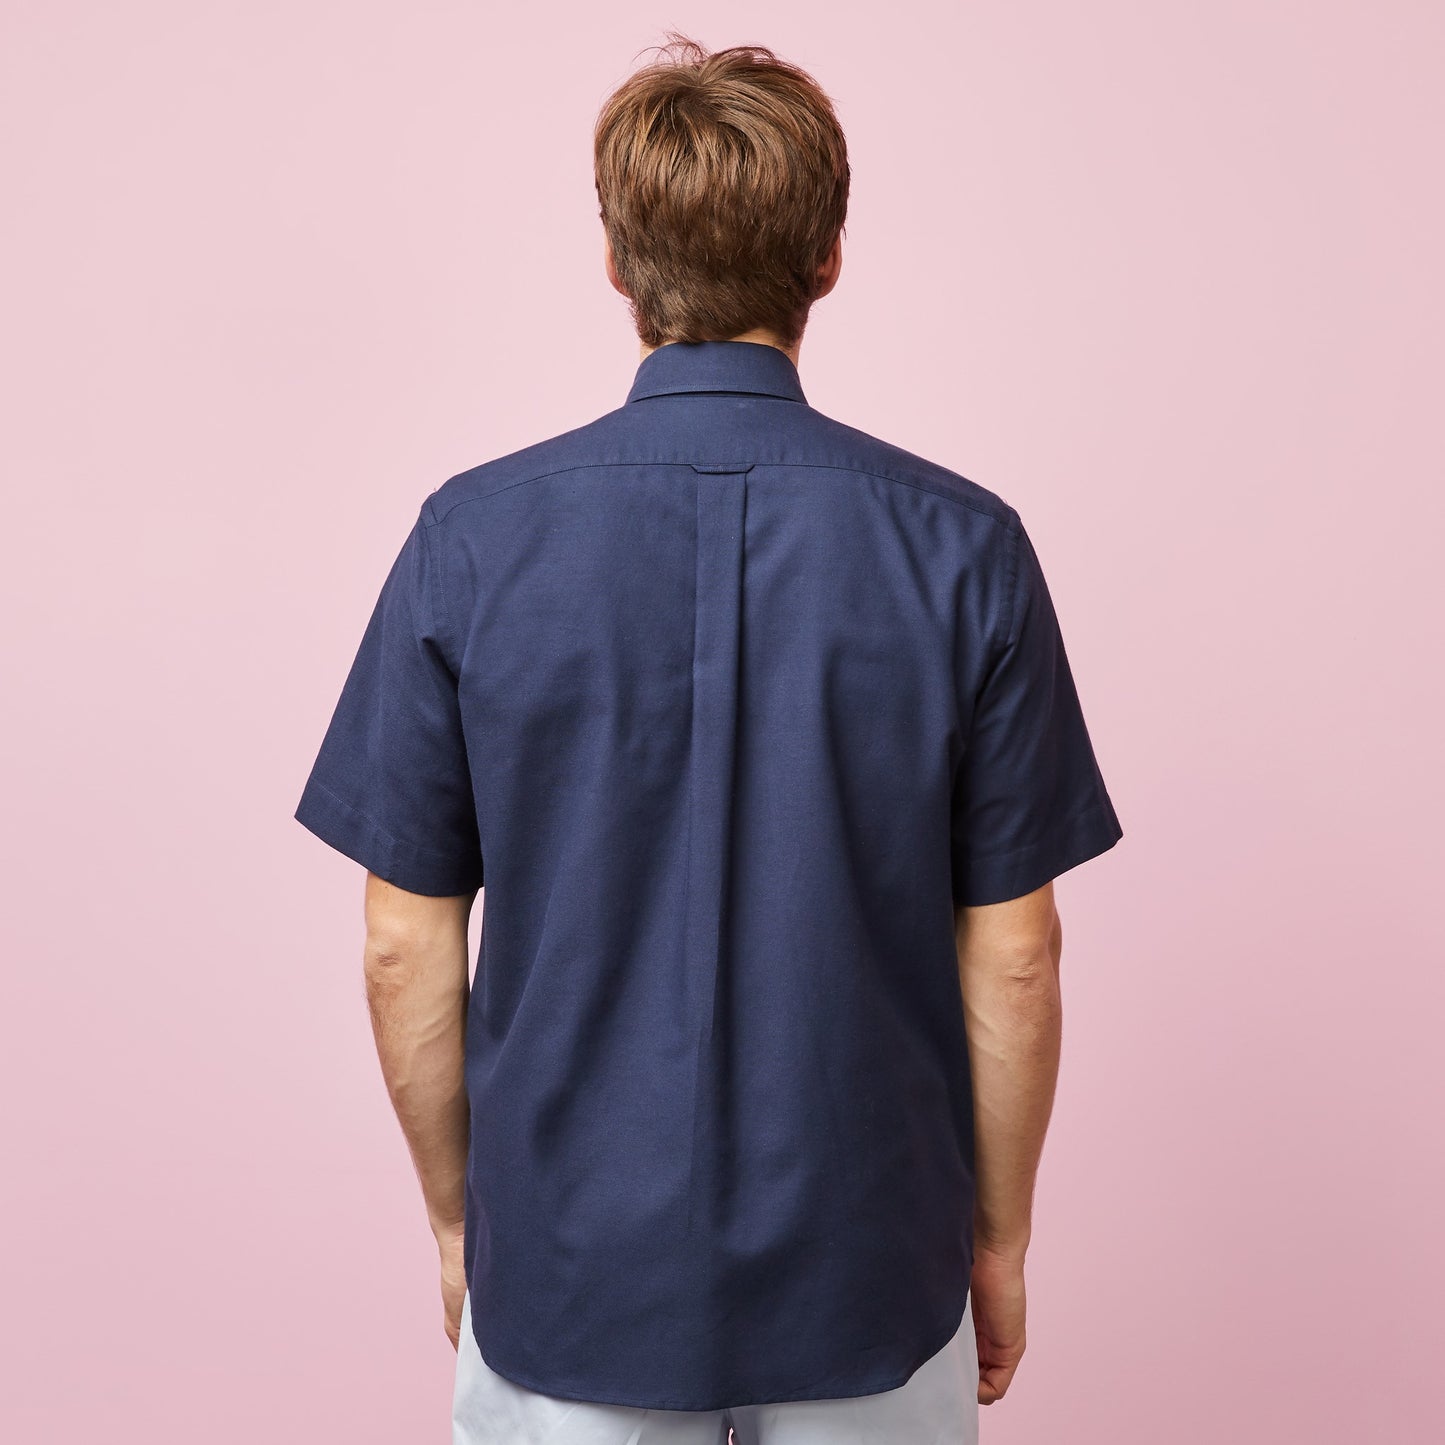 Eden Park Short Sleeve Navy Cotton Shirt